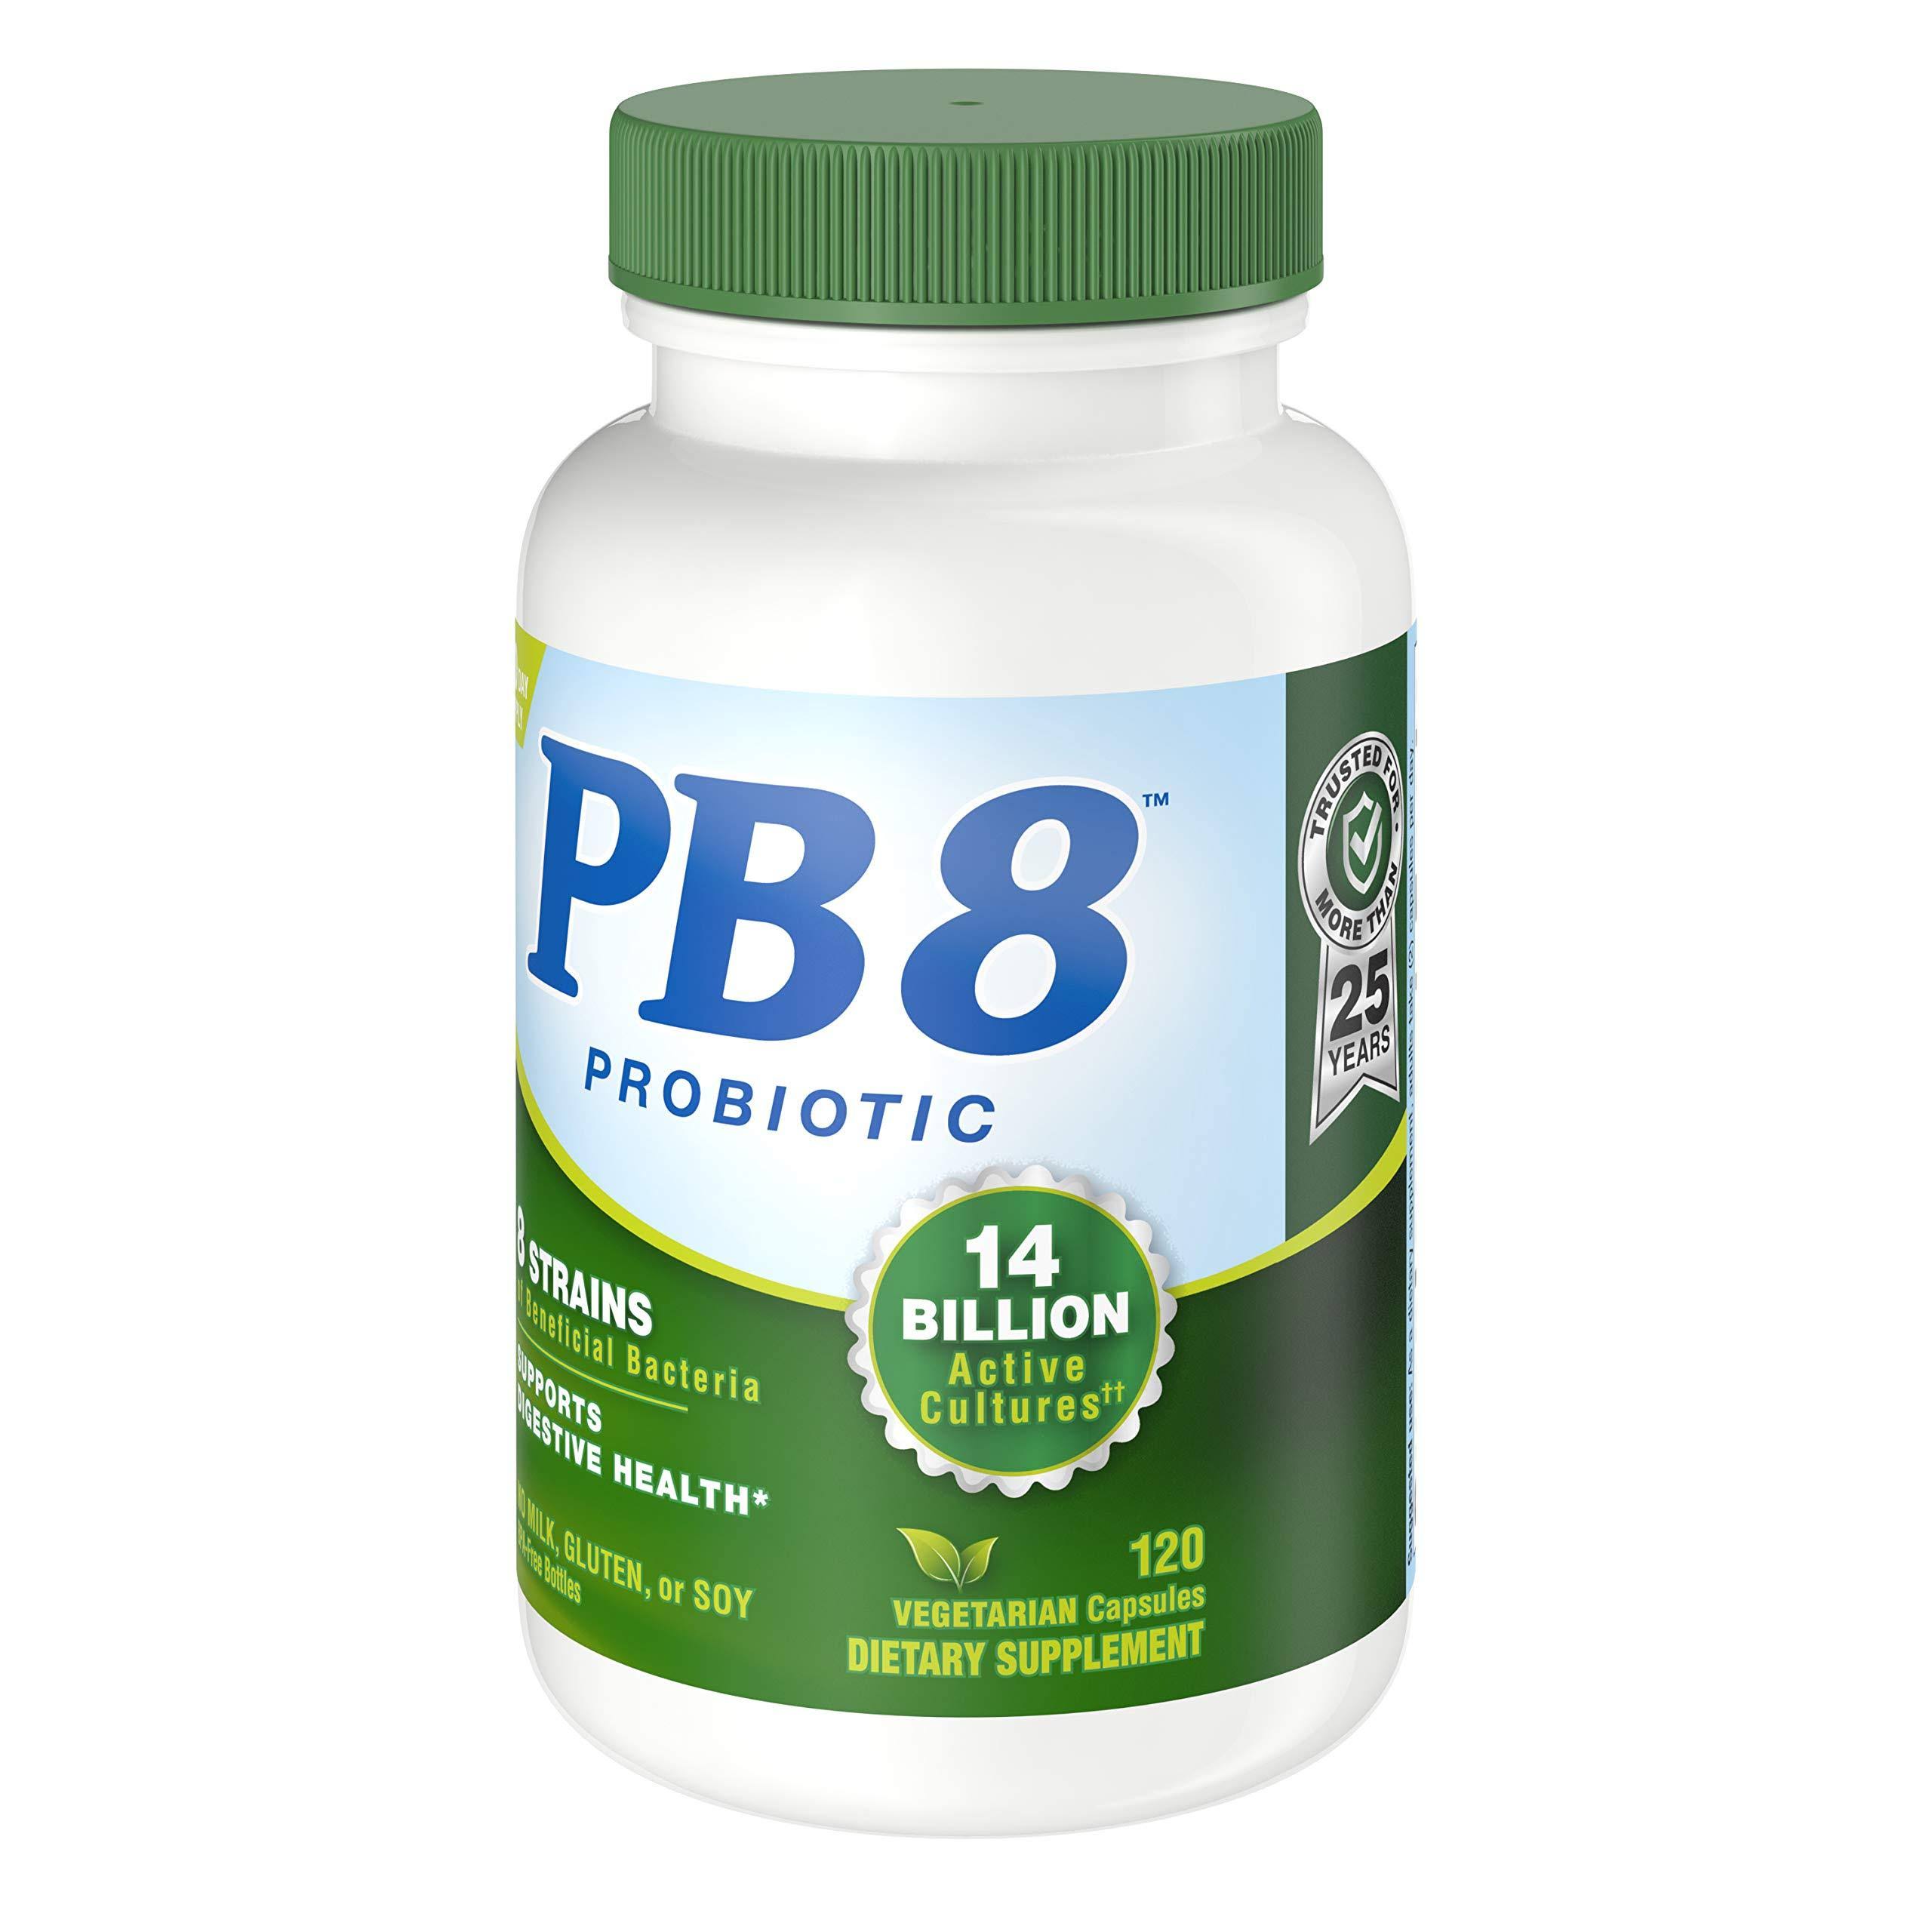 Nutrition Now PB 8 - 60 Vcaps